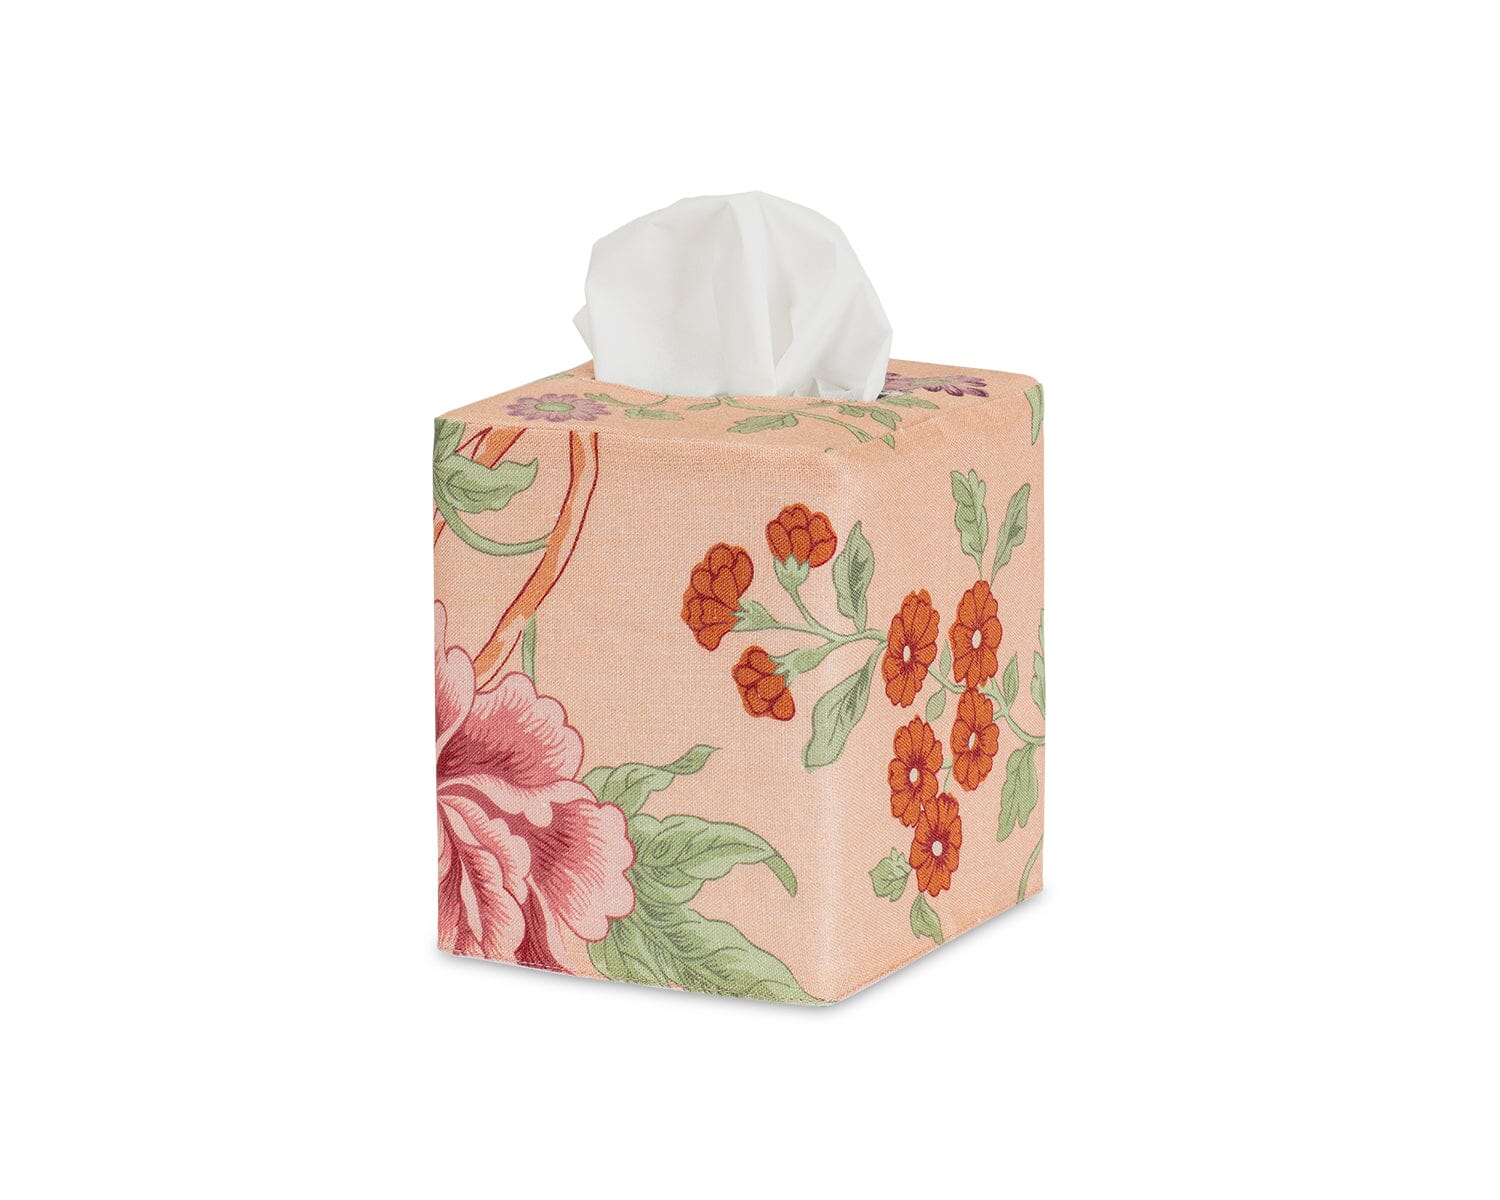 Tissue Box Cover - Simone Linen Tissue Cover in Apricot - Matouk Schumacher